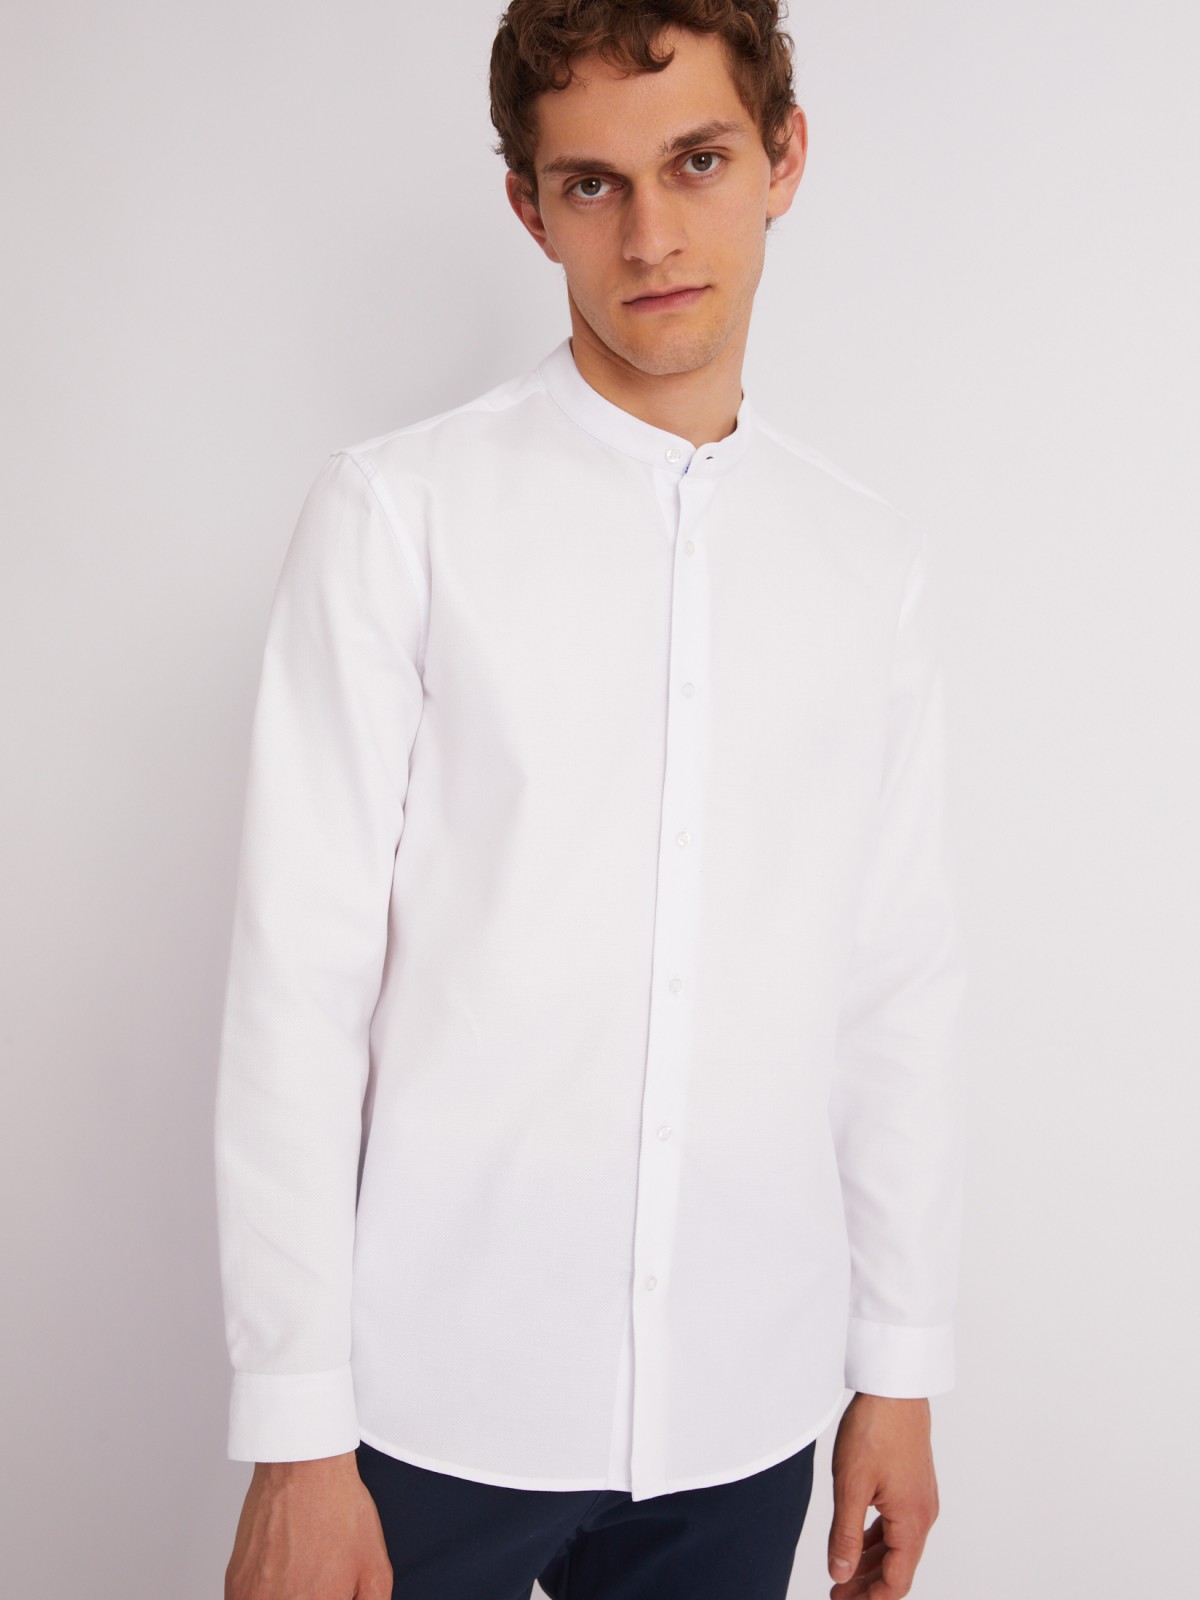 Офисная рубашка с воротником-стойкой и длинным рукавом zolla 013312159023, цвет белый, размер M - фото 4